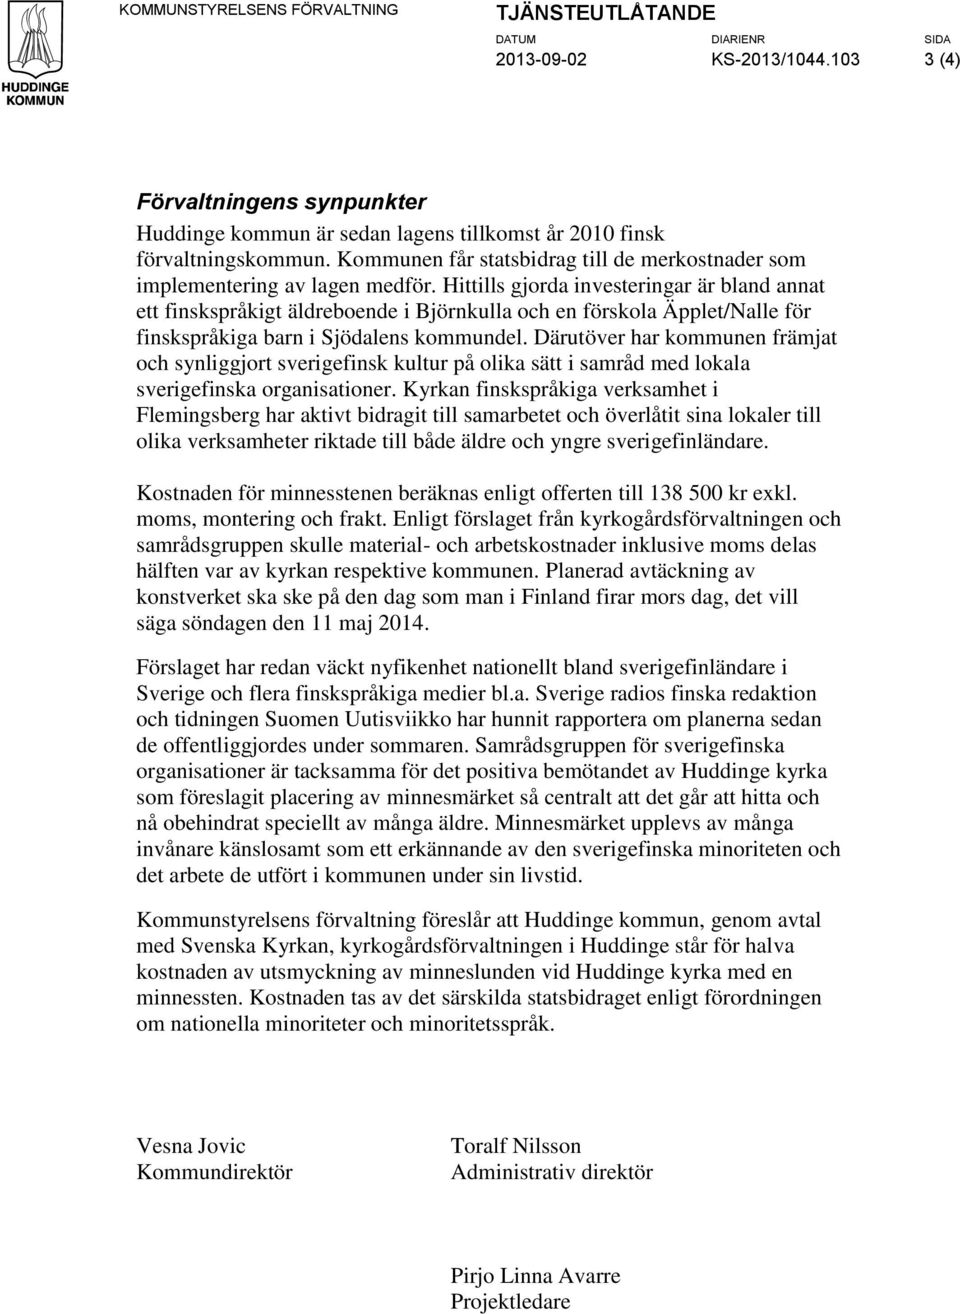 Hittills gjorda investeringar är bland annat ett finskspråkigt äldreboende i Björnkulla och en förskola Äpplet/Nalle för finskspråkiga barn i Sjödalens kommundel.